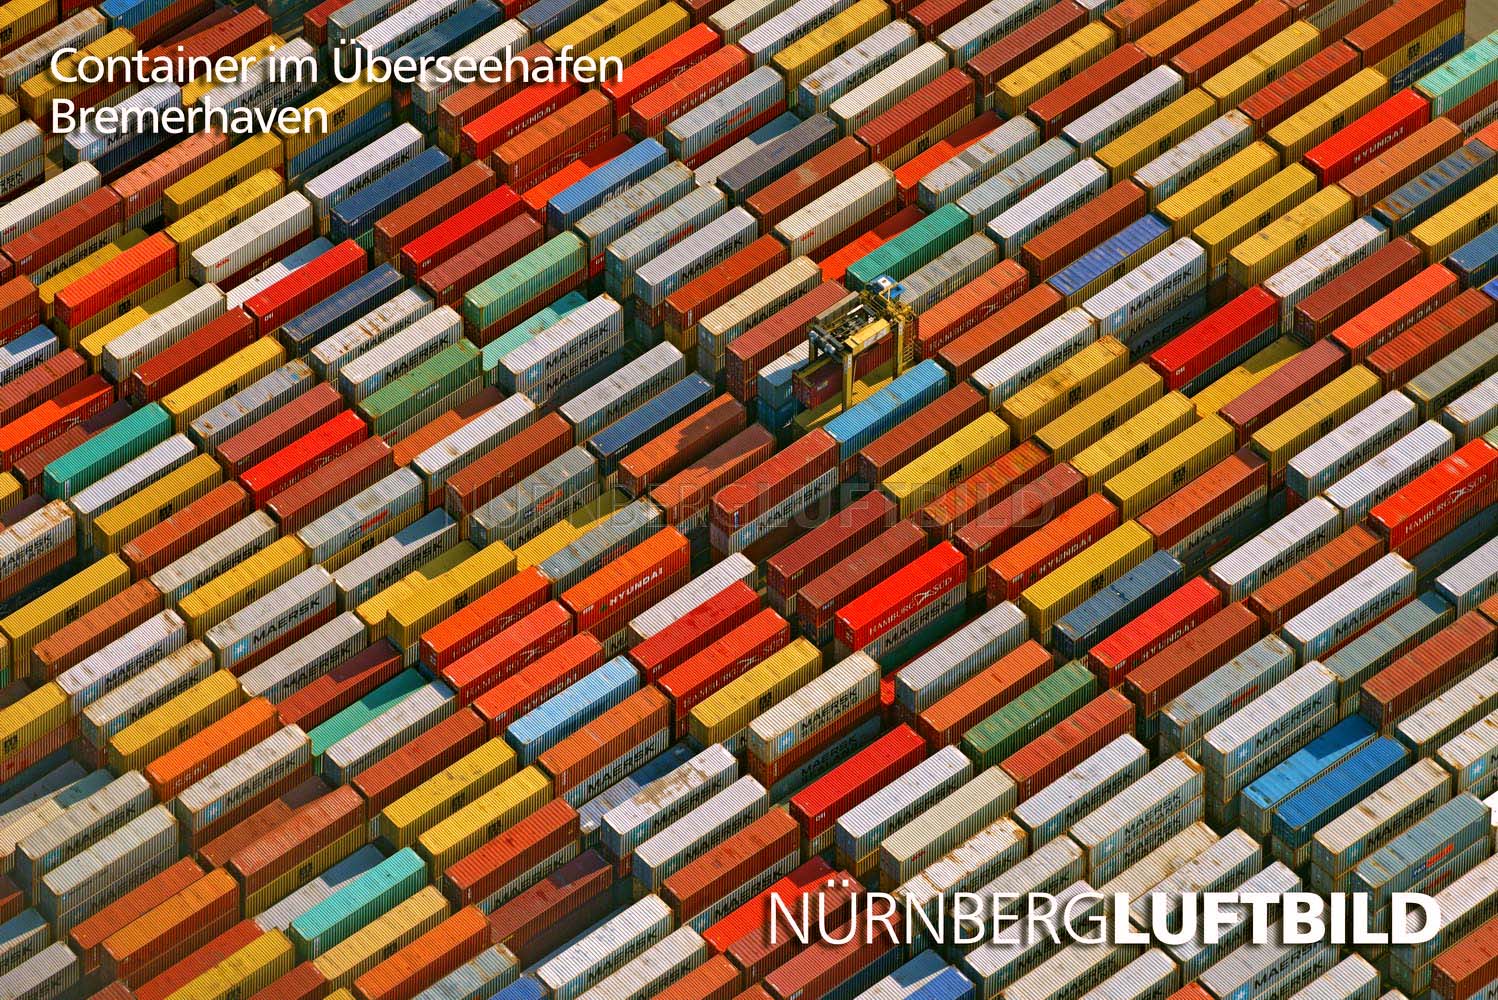 Container im Überseehafen, Bremerhaven, Luftaufnahme